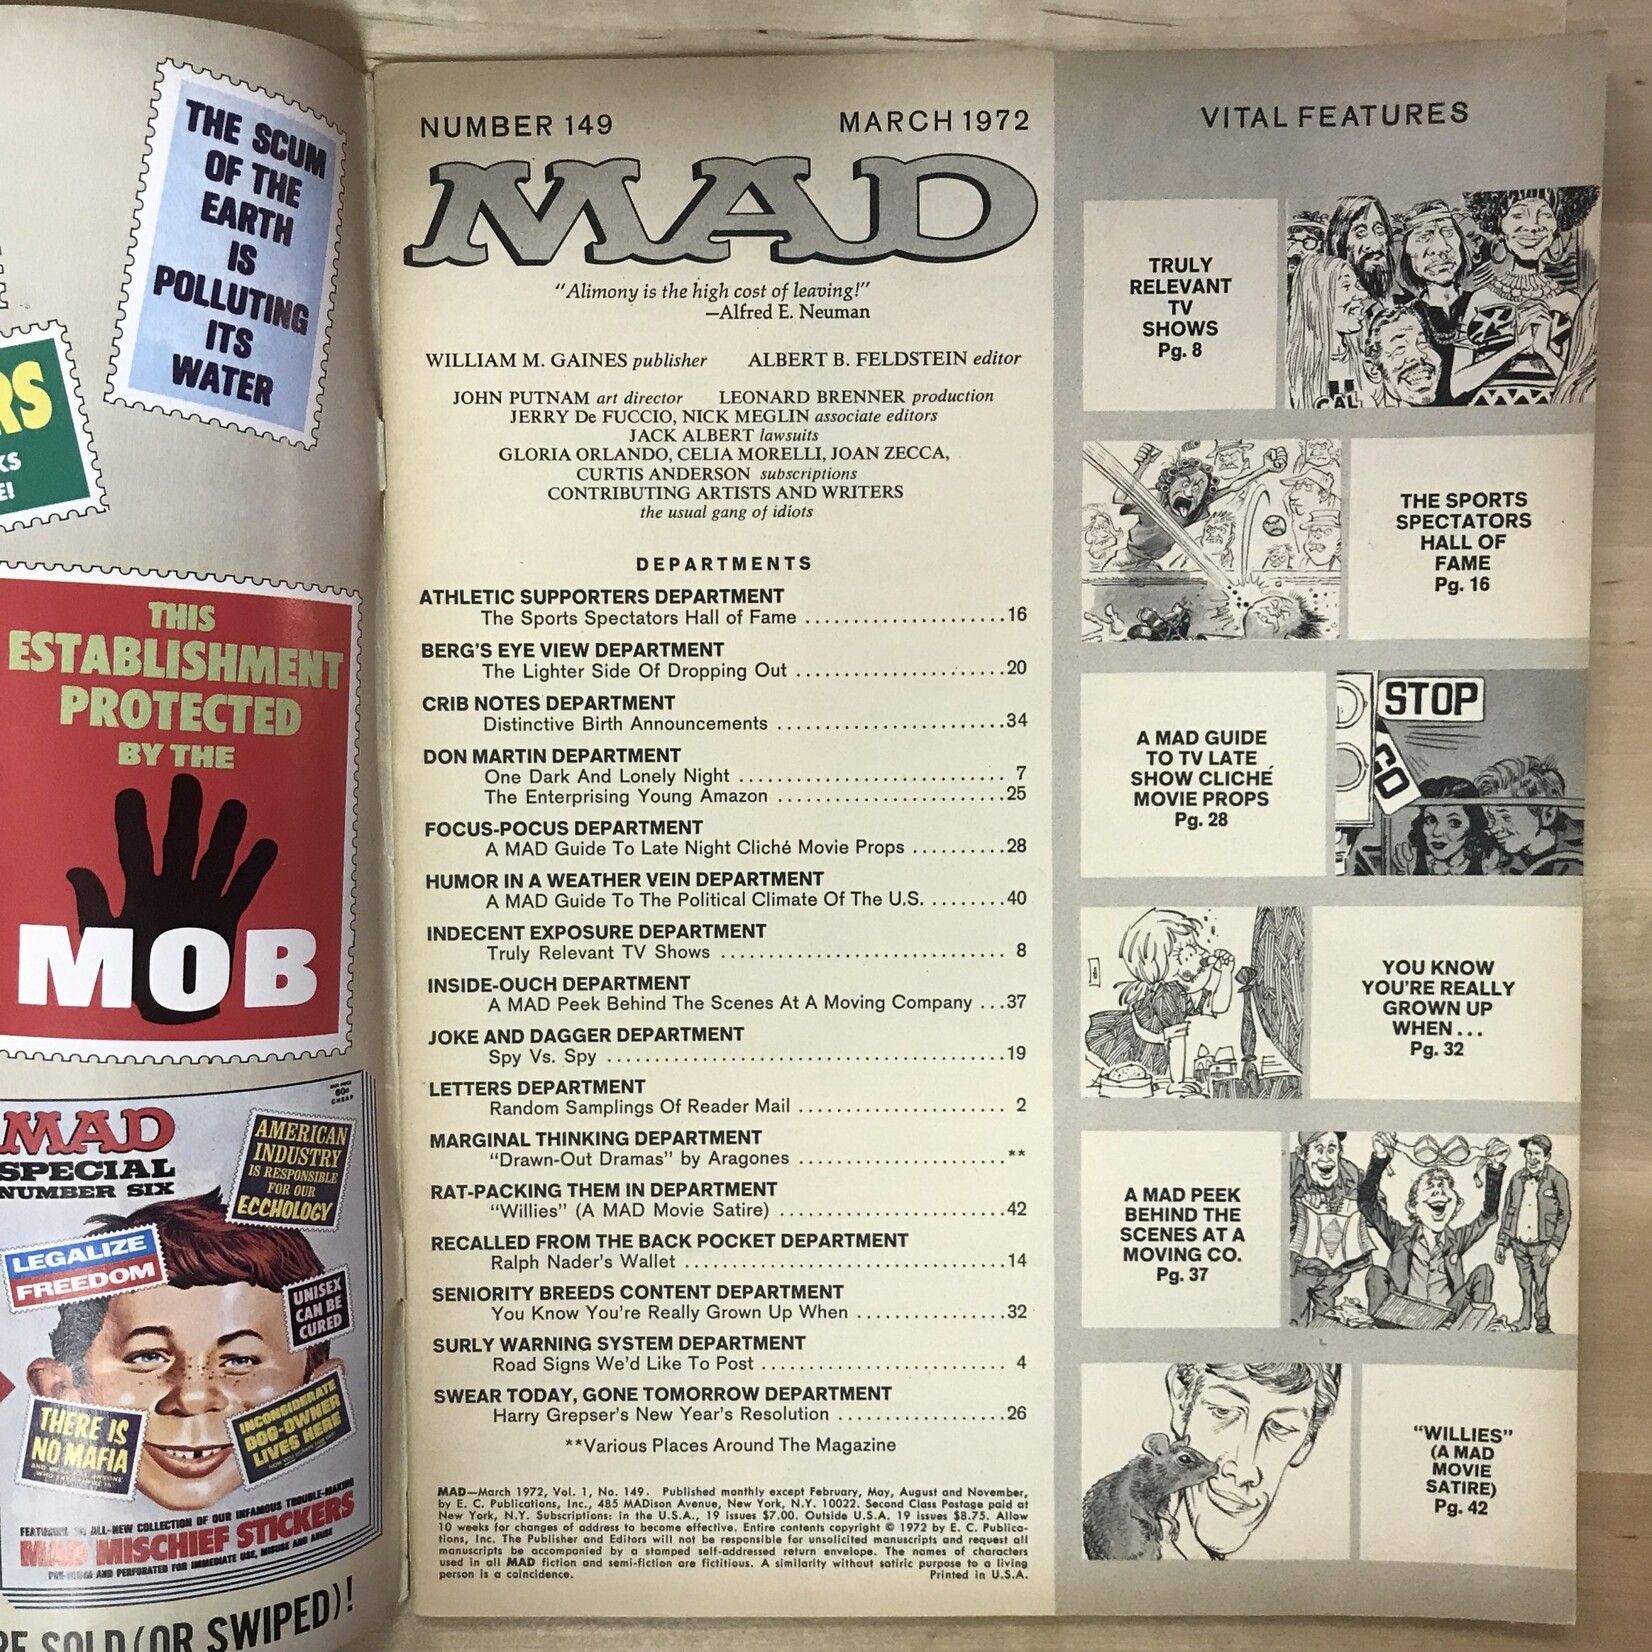 MAD Magazine - #149 March 1972 (Willard) - Magazine